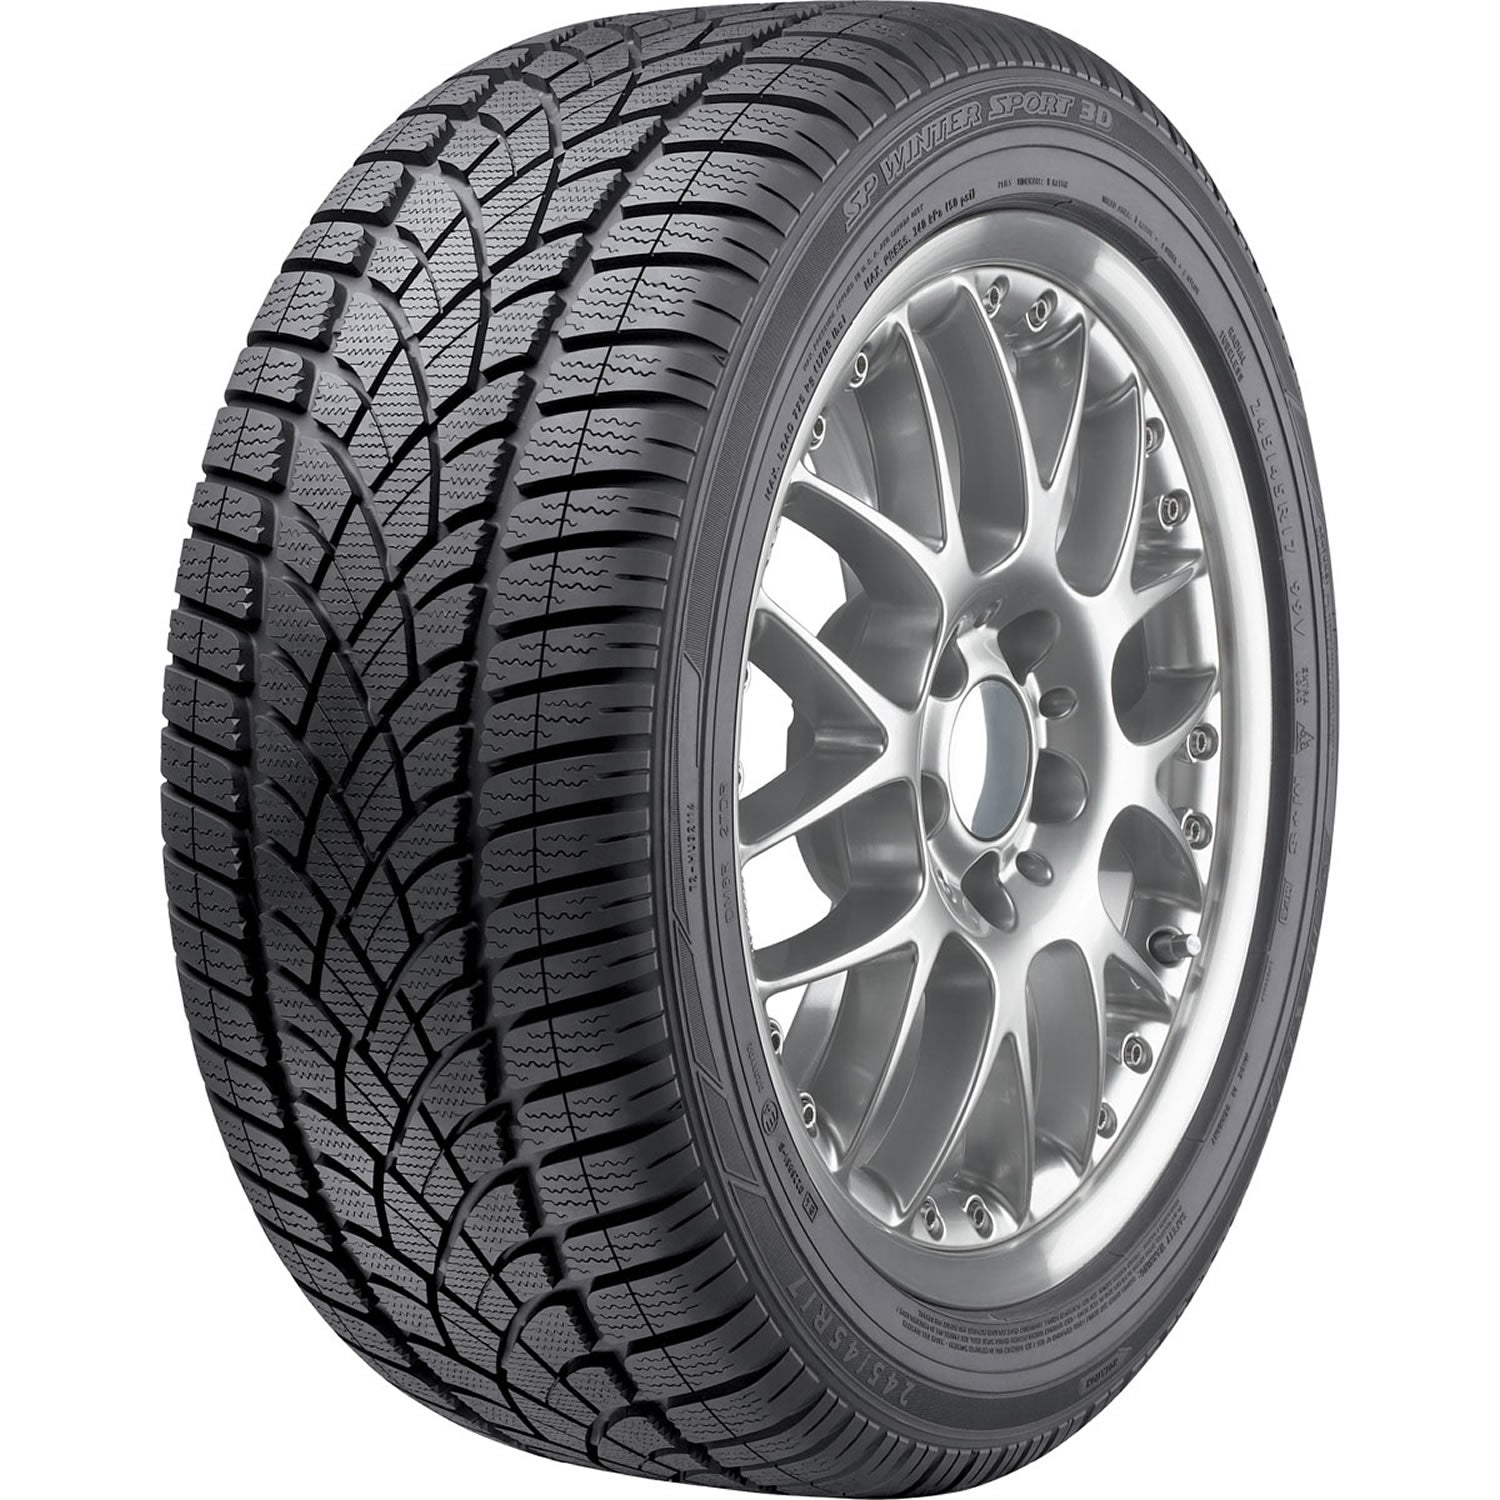 DUNLOP SP WINTER SPORT 3D 235/40R18 (25.4X9.5R 18) Tires